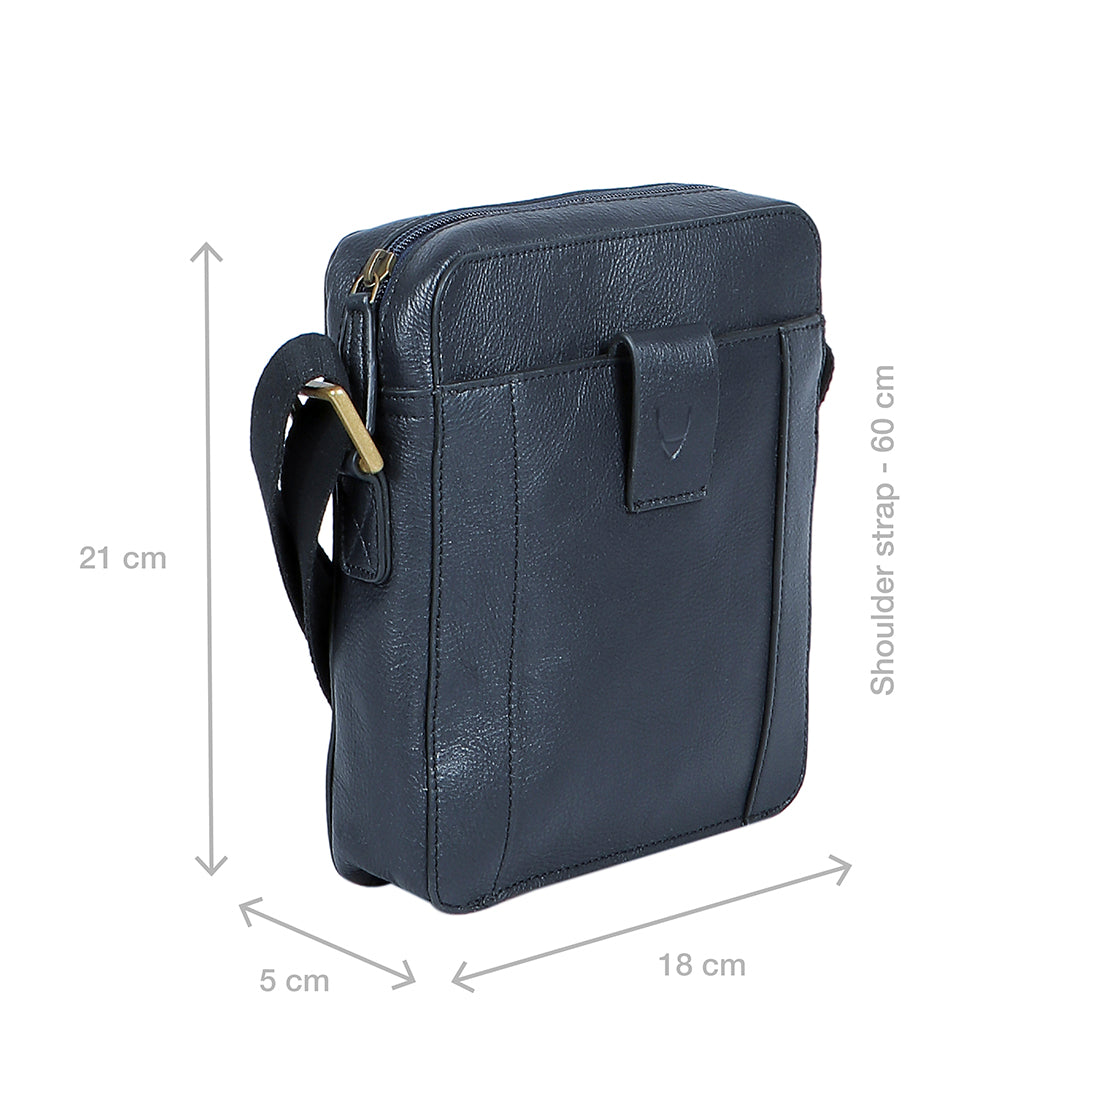 Hidesign Sling Bags - Buy Hidesign Sling Bags Online in India